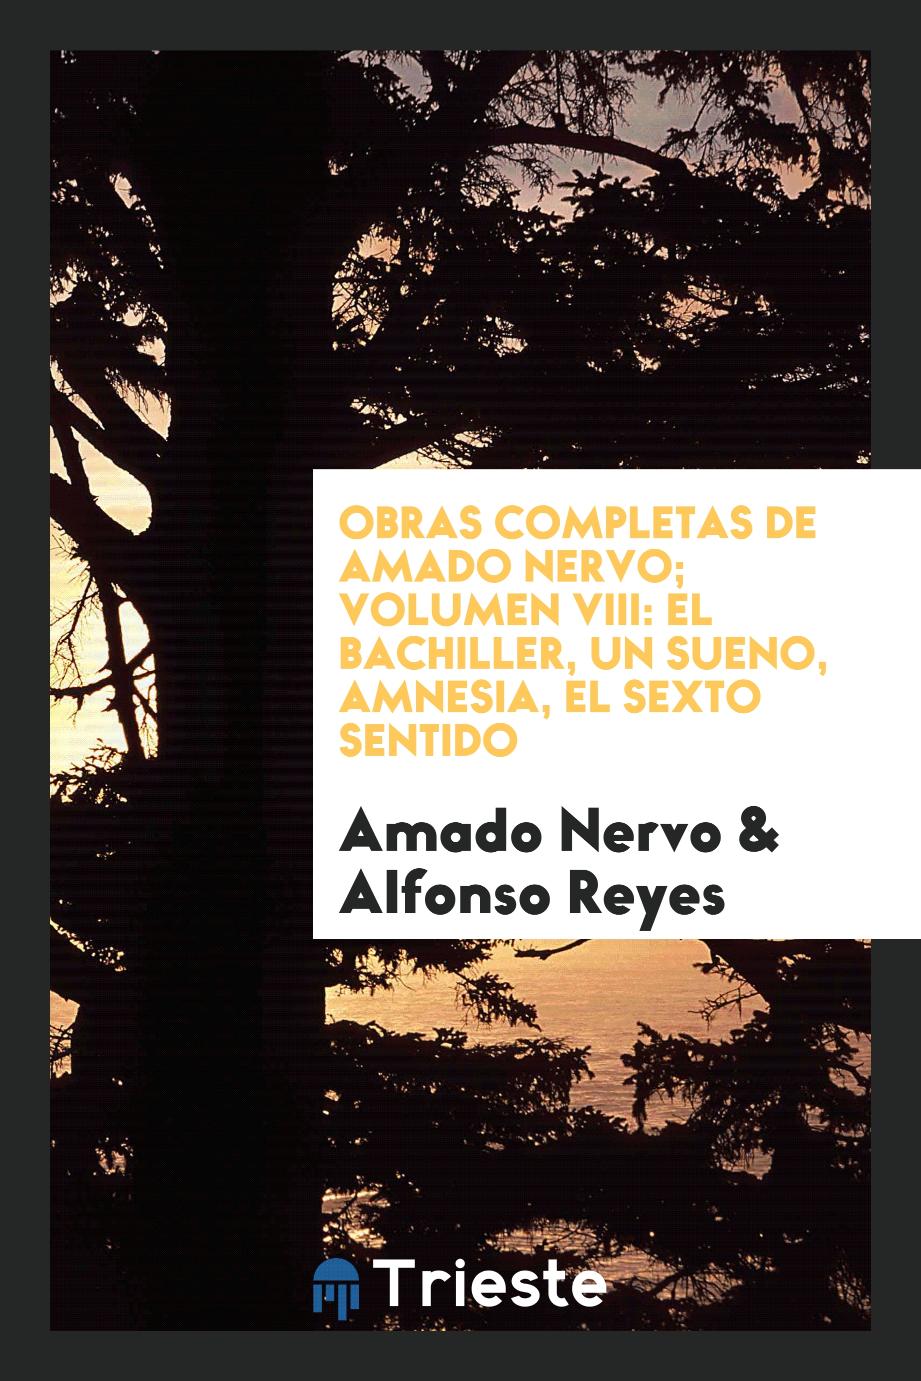 Obras completas de Amado Nervo; Volumen VIII: El Bachiller, un sueno, amnesia, el sexto sentido